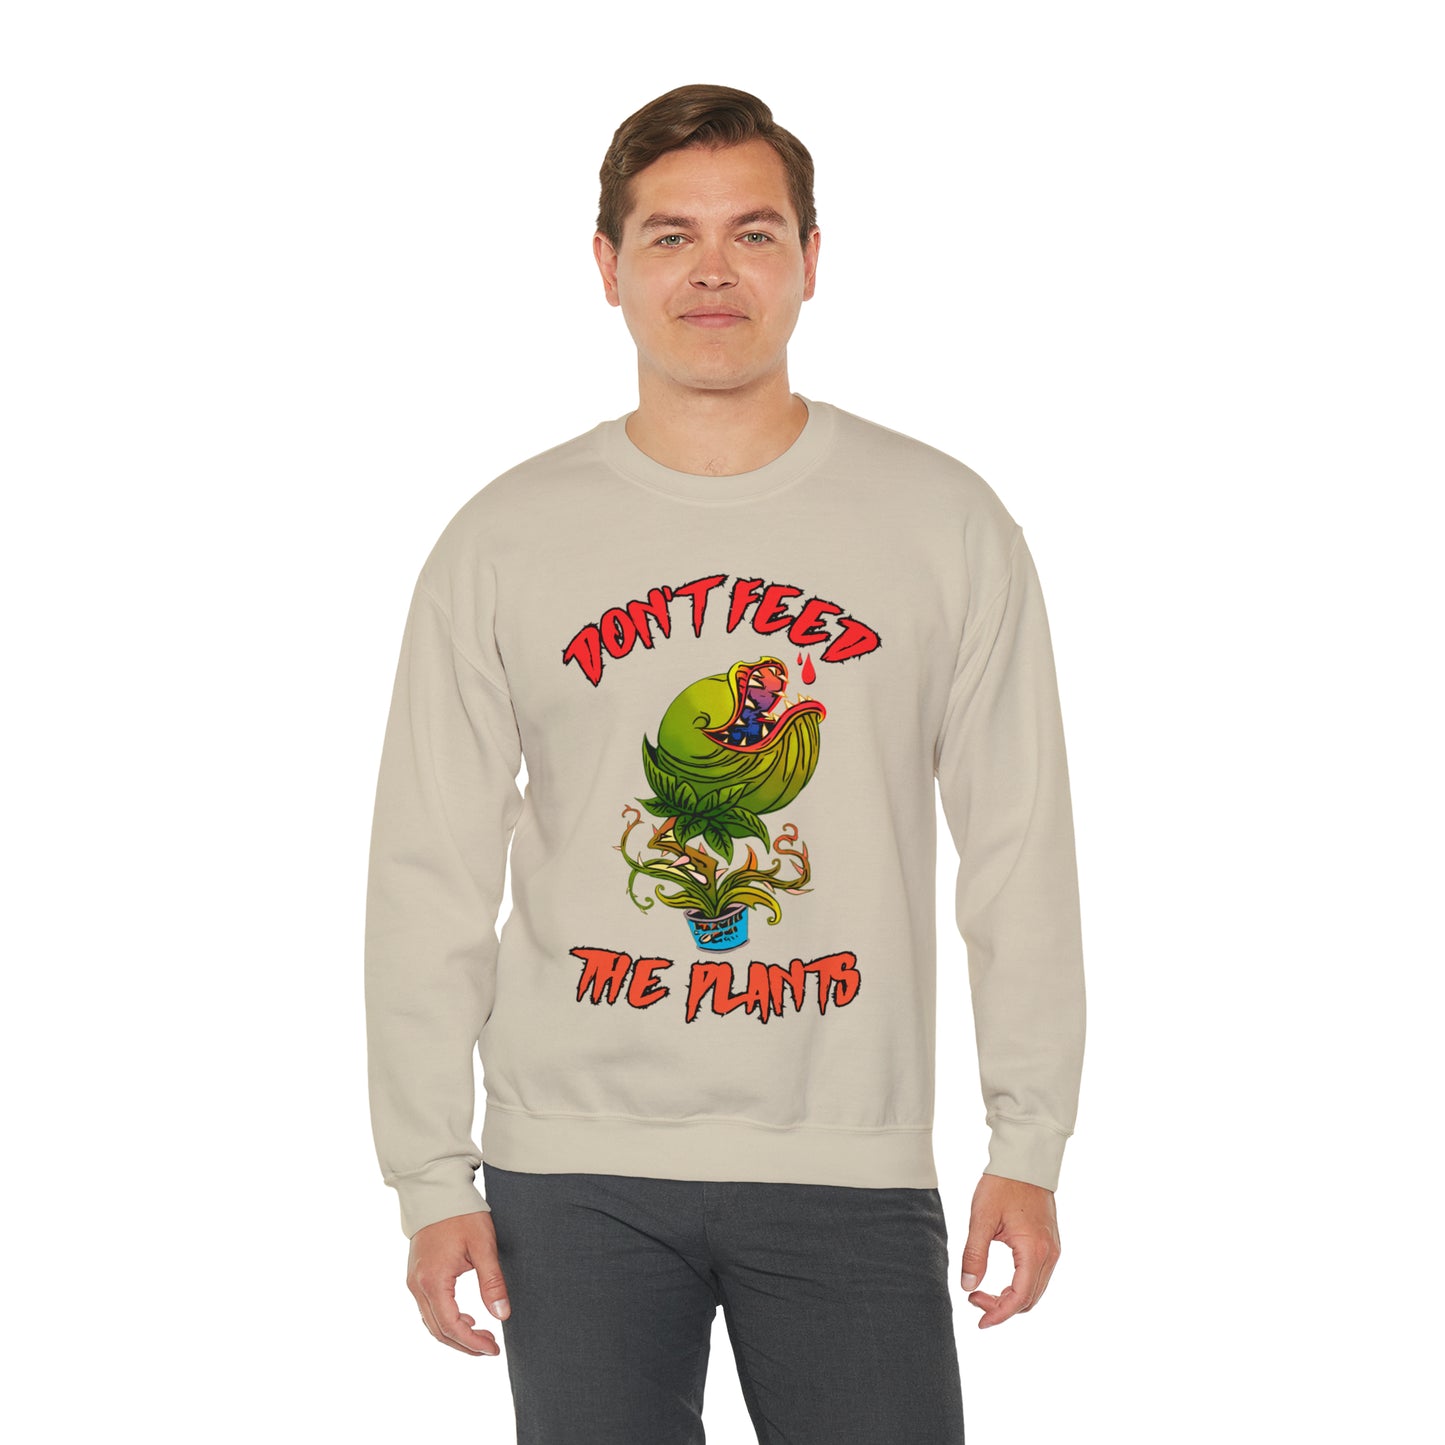 Seymour - Crewneck Sweatshirt